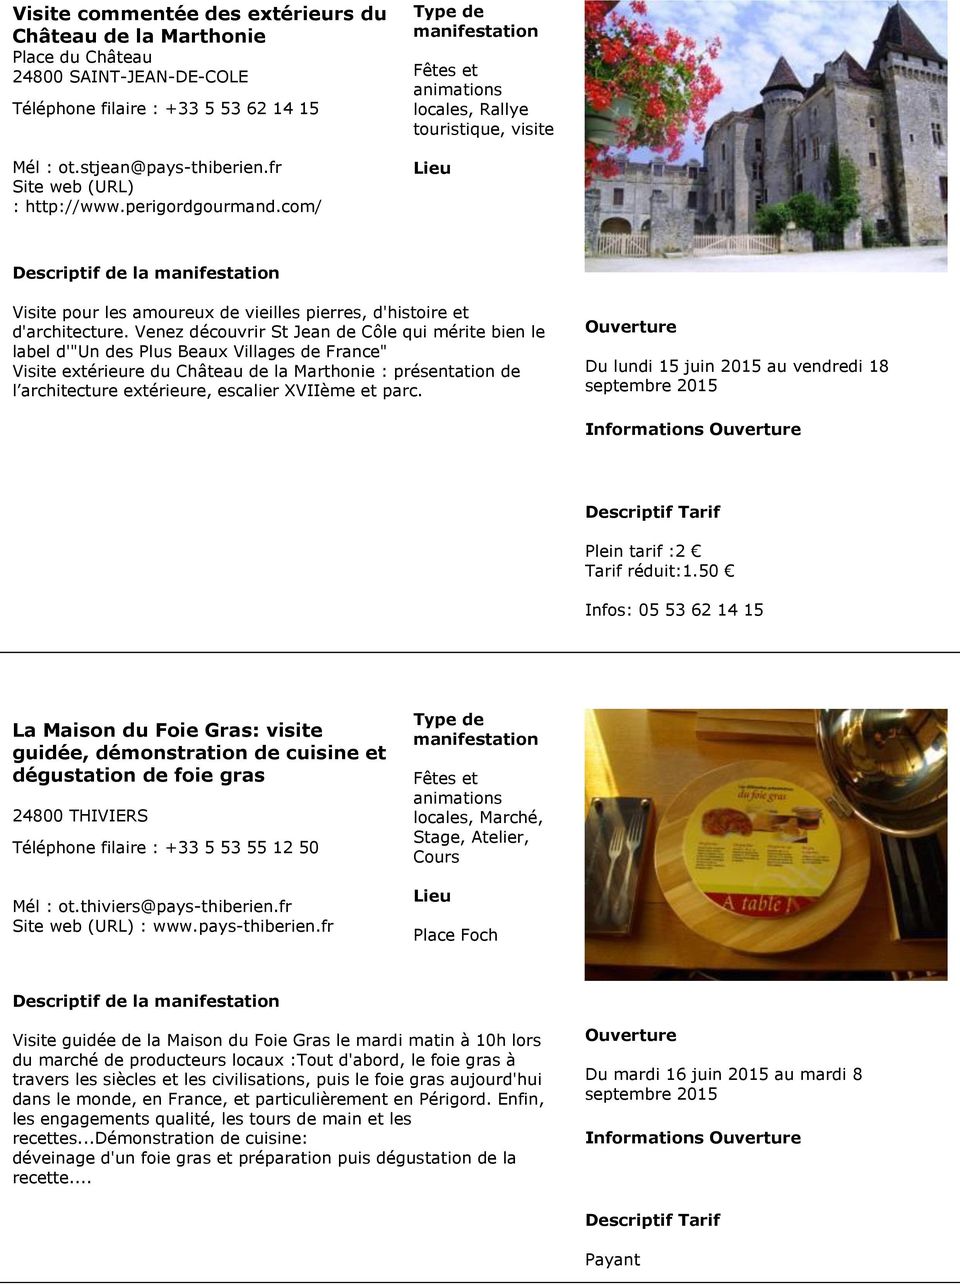 Venez découvrir St Jean de Côle qui mérite bien le label d'"un des Plus Beaux Villages de France" Visite extérieure du Château de la Marthonie : présentation de l architecture extérieure, escalier